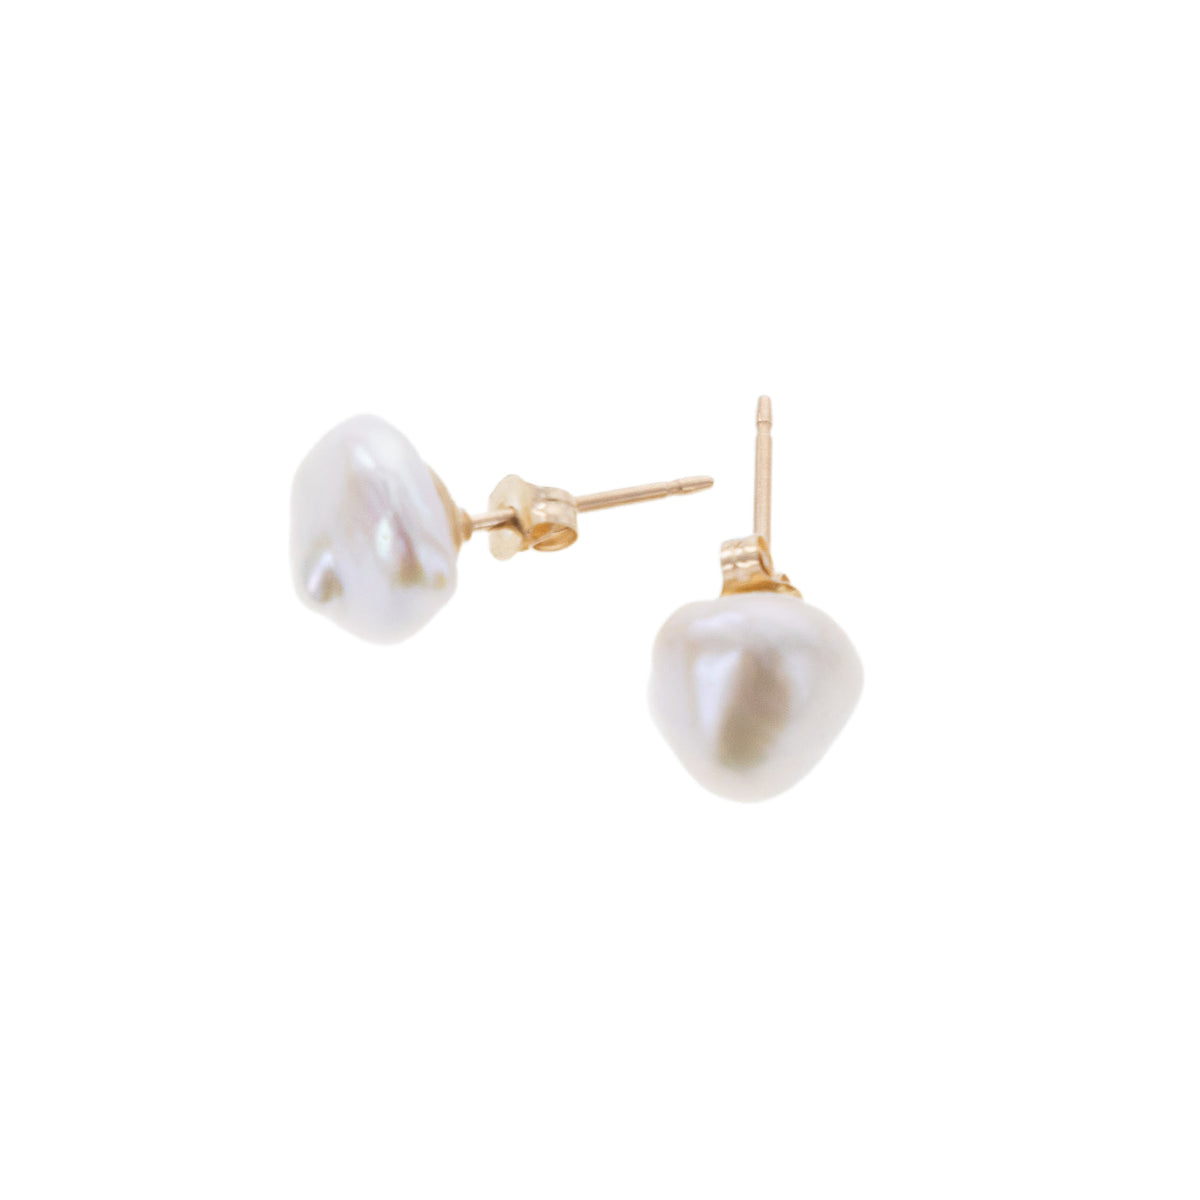 Pop-Up Mākeke - 21 Degress North Designs - Keshi Poe Stud Earrings - White